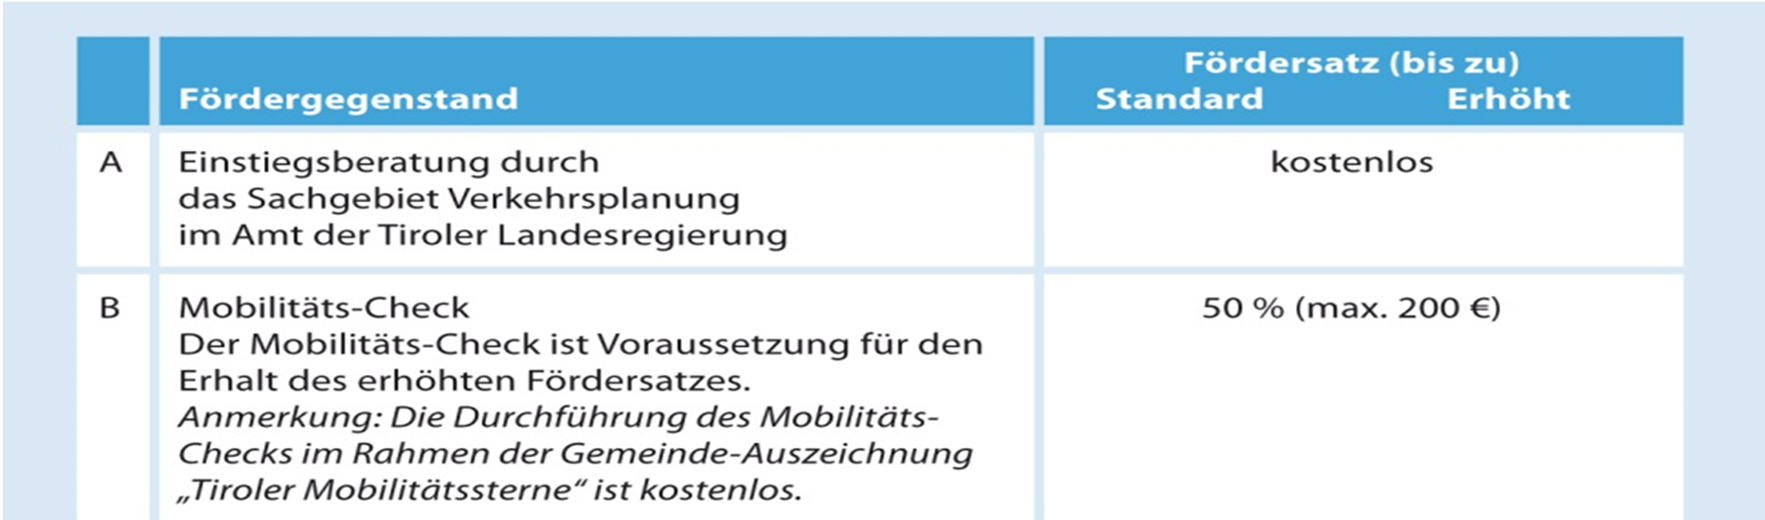 Förderung des umweltfreundlichen Mobilitätsverhaltens Im Rahmen des Mobilitätsprogrammes 2013 2020 werden Initiativen für